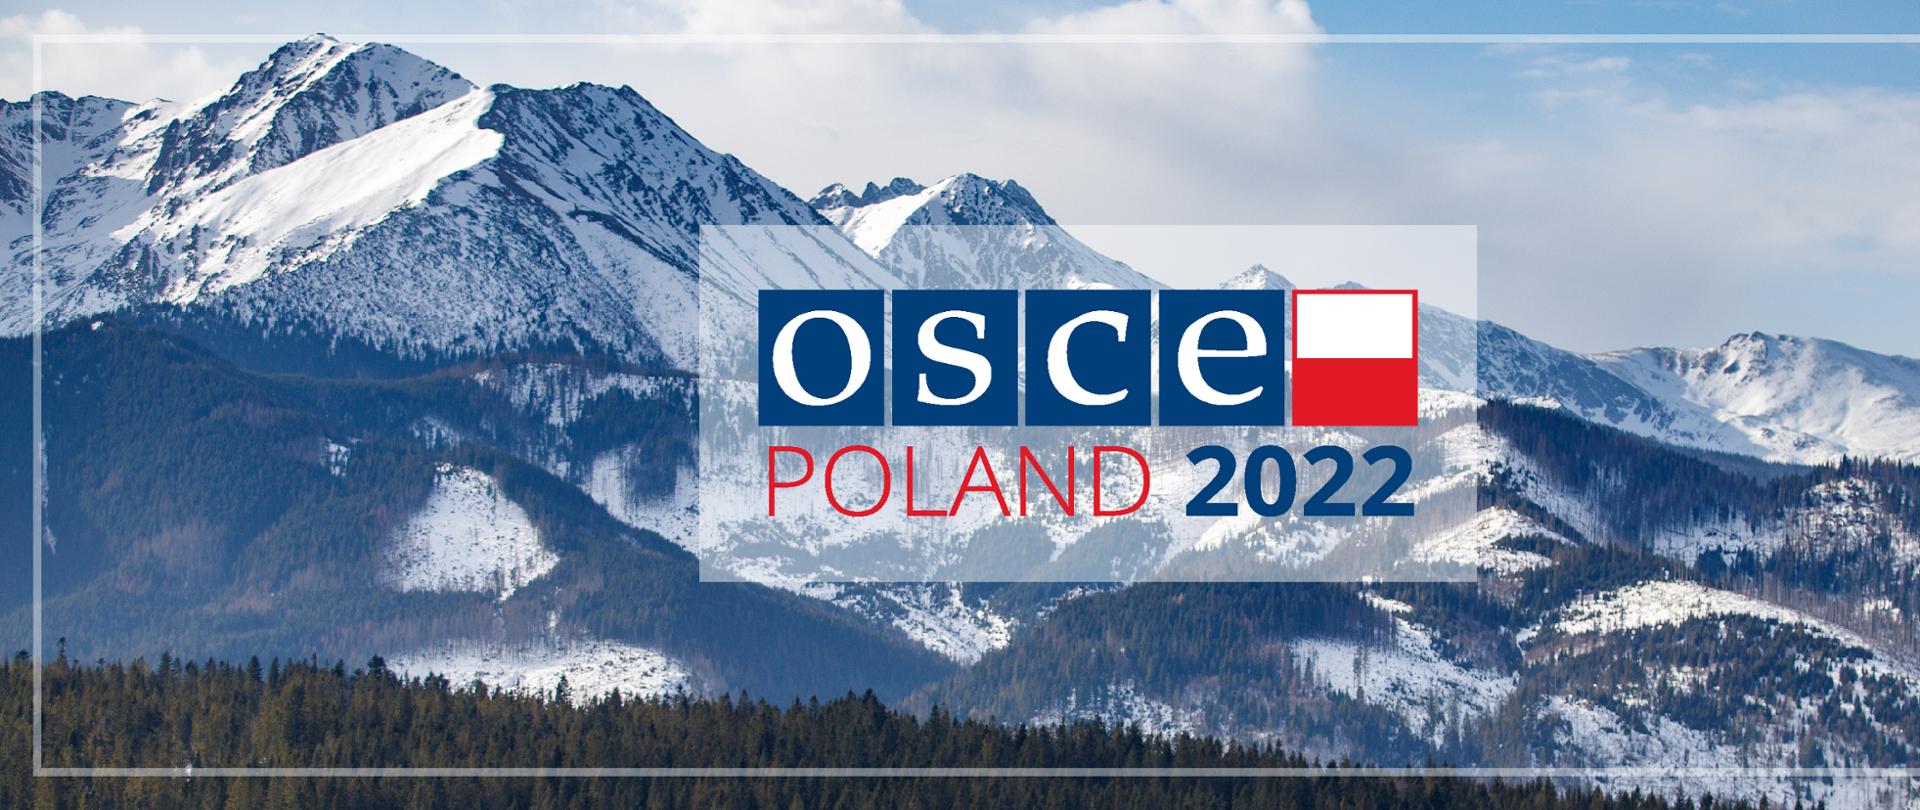 OSCE POLAND 2022